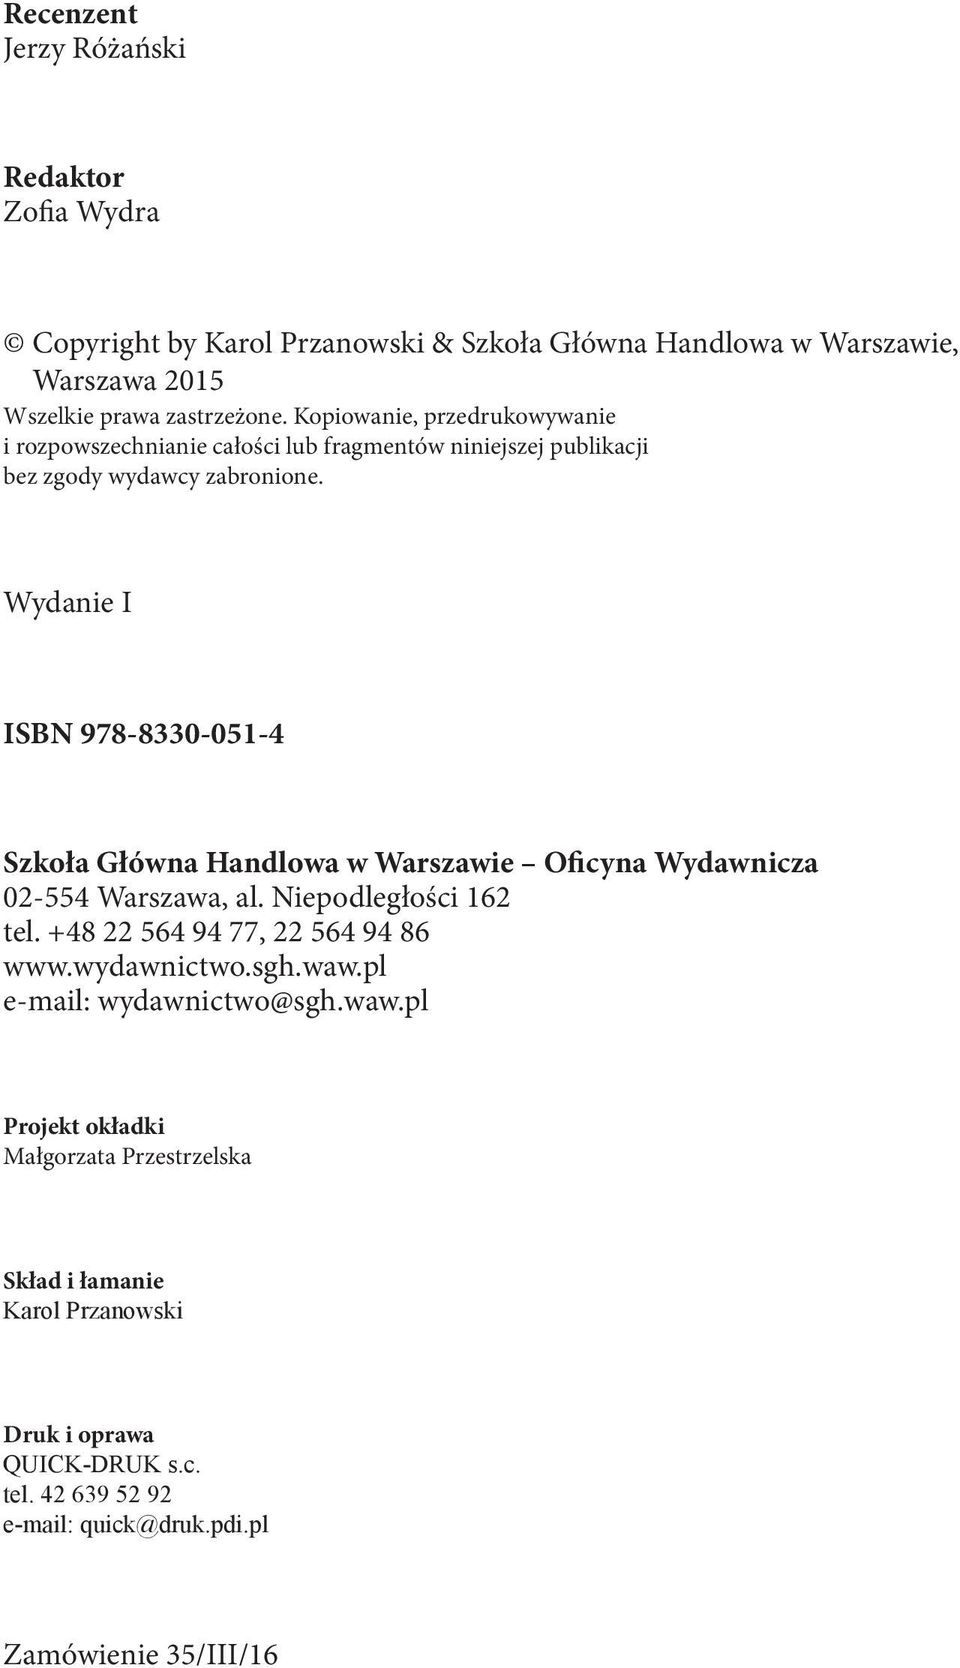 Wydanie I ISBN 978-8330-051-4 Szkoła Główna Handlowa w Warszawie Oficyna Wydawnicza 02-554 Warszawa, al. Niepodległości 162 tel. +48 22 564 94 77, 22 564 94 86 www.